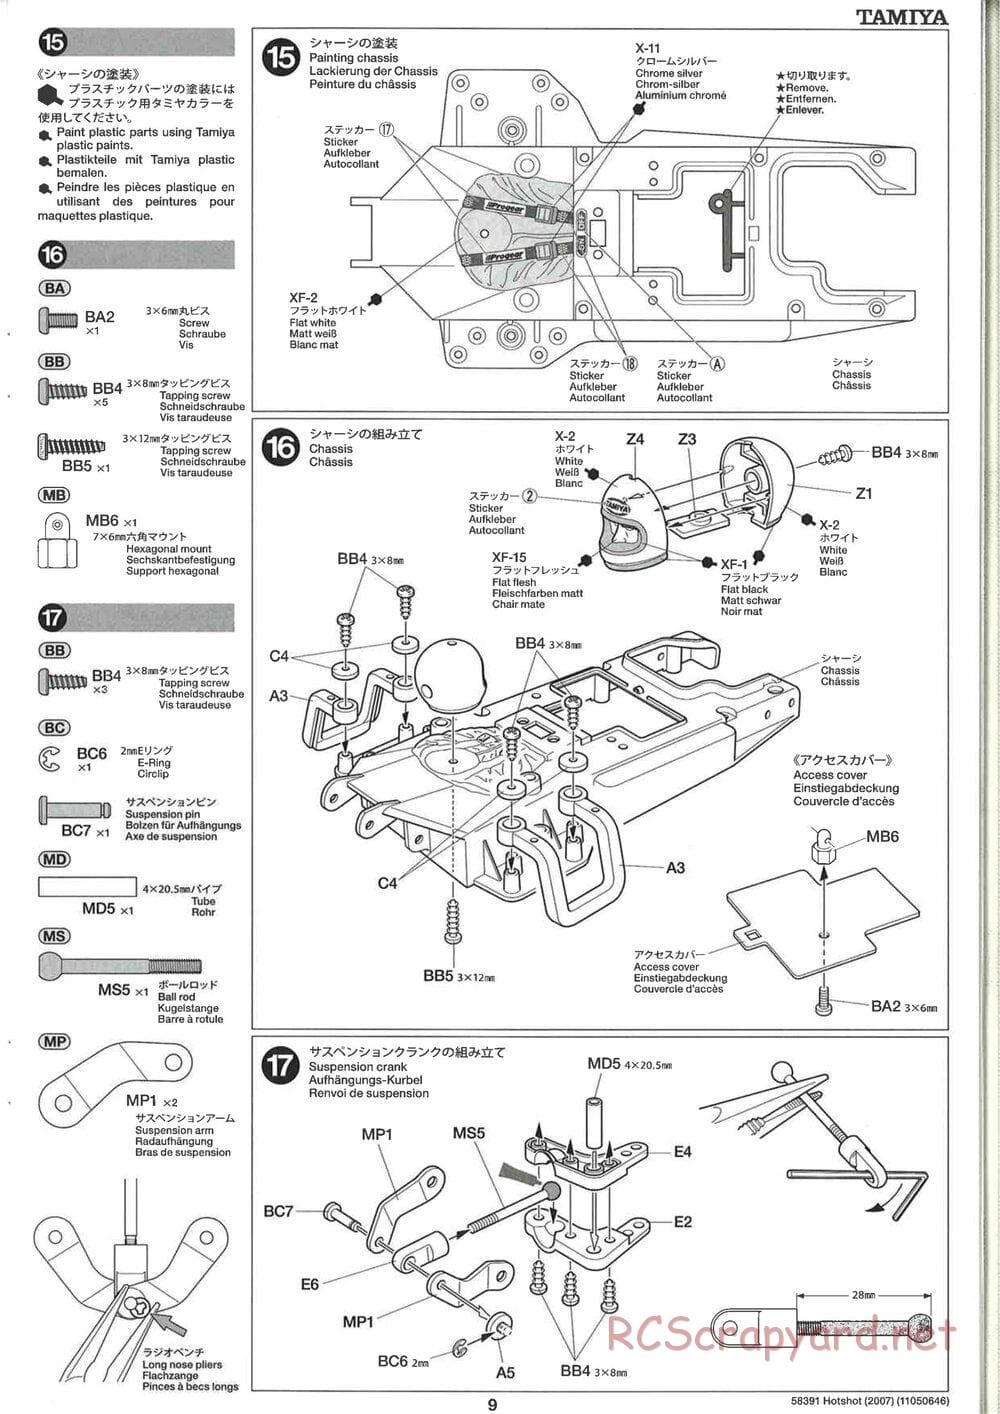 Tamiya - Hotshot - 2007 - HS Chassis - Manual - Page 9